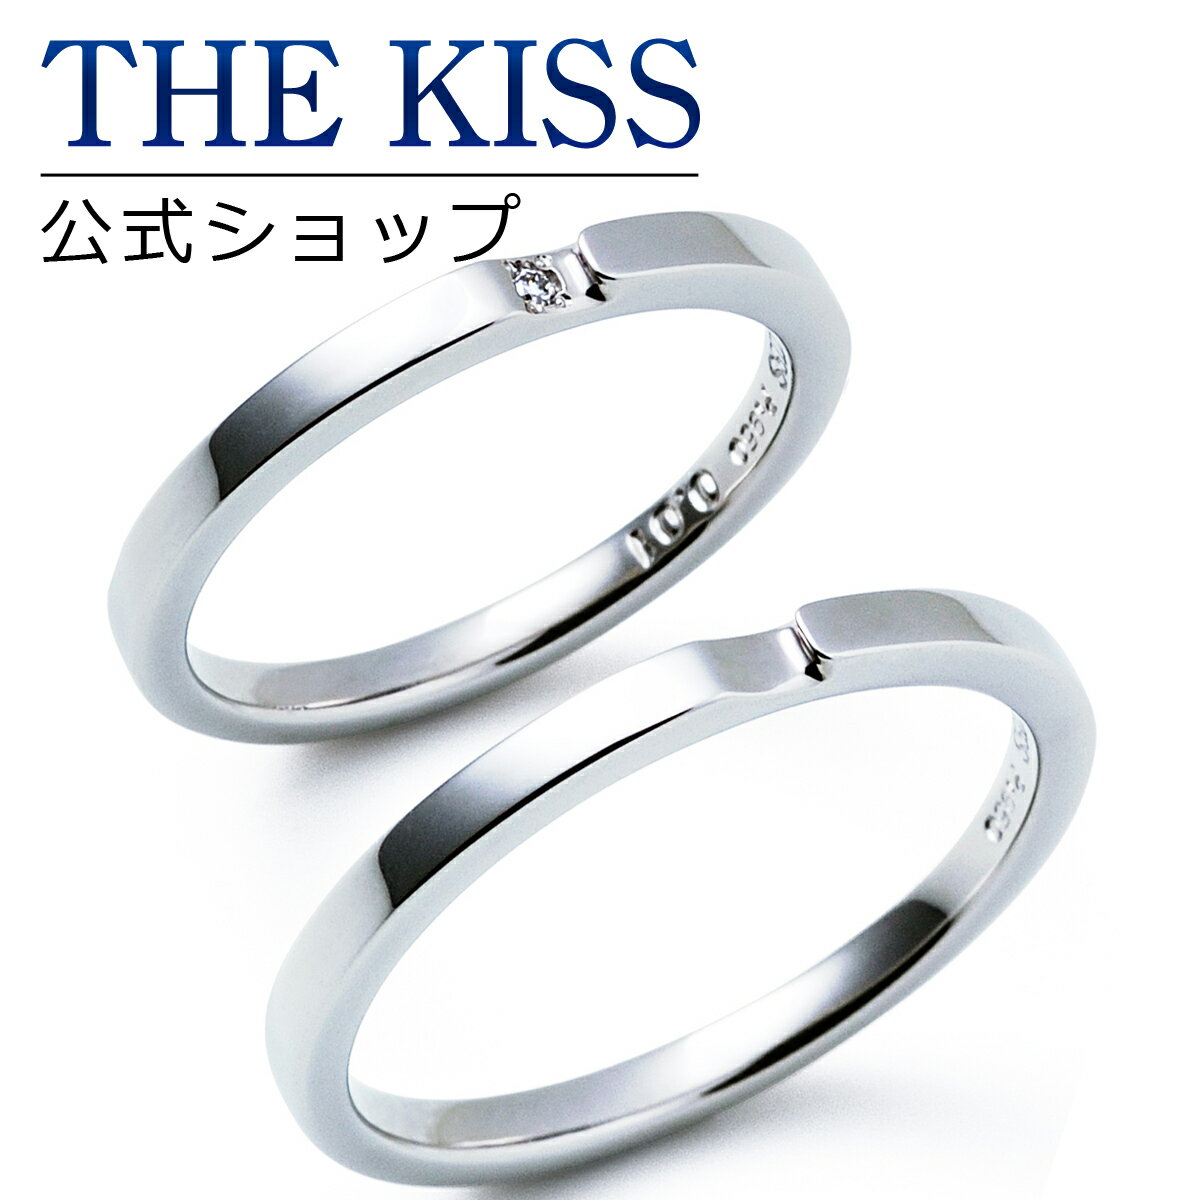 【ラッピング無料】【刻印無料】【THE KISS Anniversary】 プラチナ マリッジ リング 結婚指輪 ペアリング THE KISS ザキッス リング・指輪 7061122091-7061122092 セット シンプル 男性 女性 2個セット ブライダル